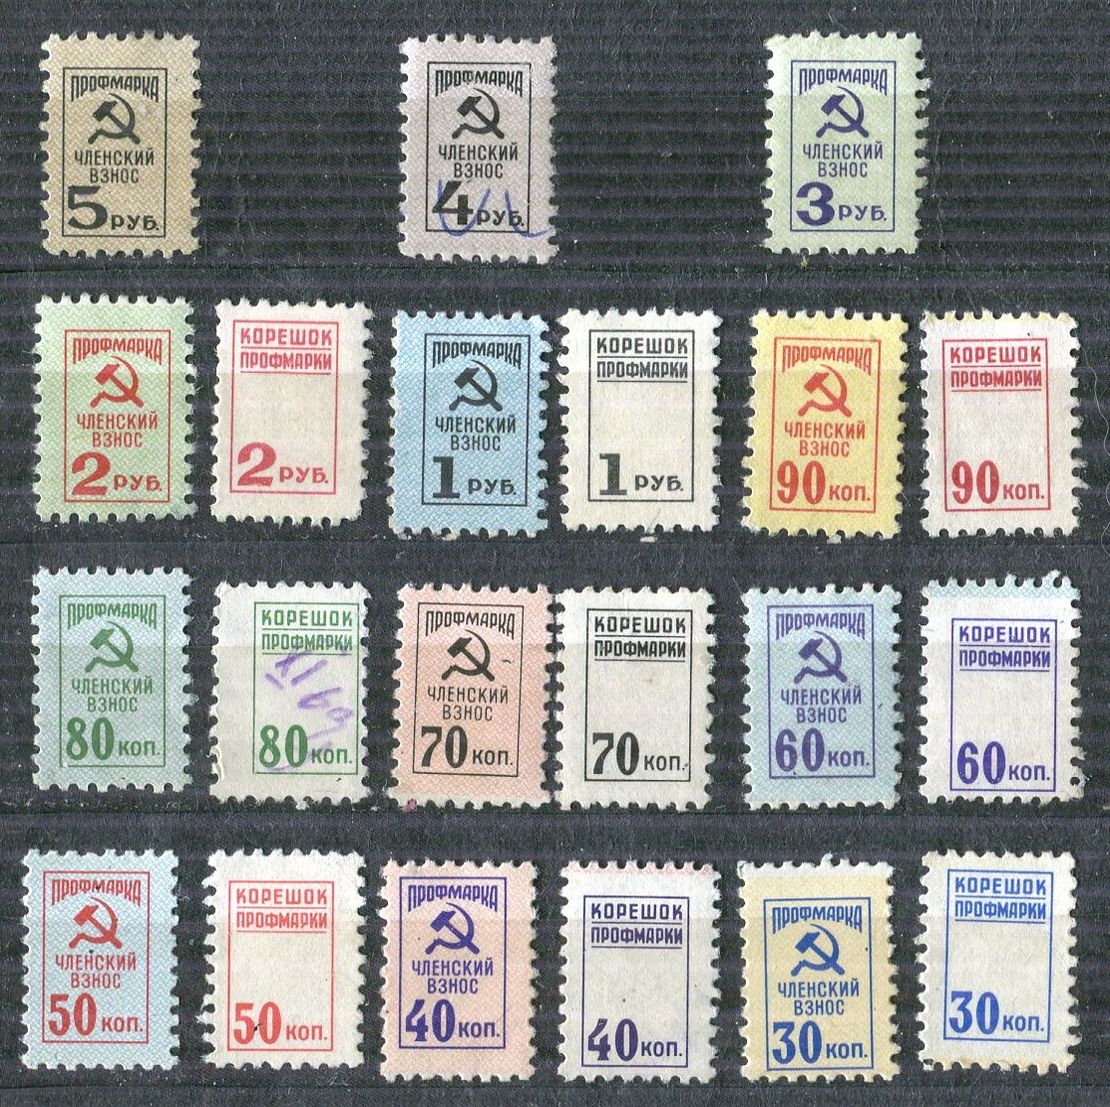 Профсоюз, членские взносы. Коллекция не почтовых марок Владимира. 1963 год и далее.